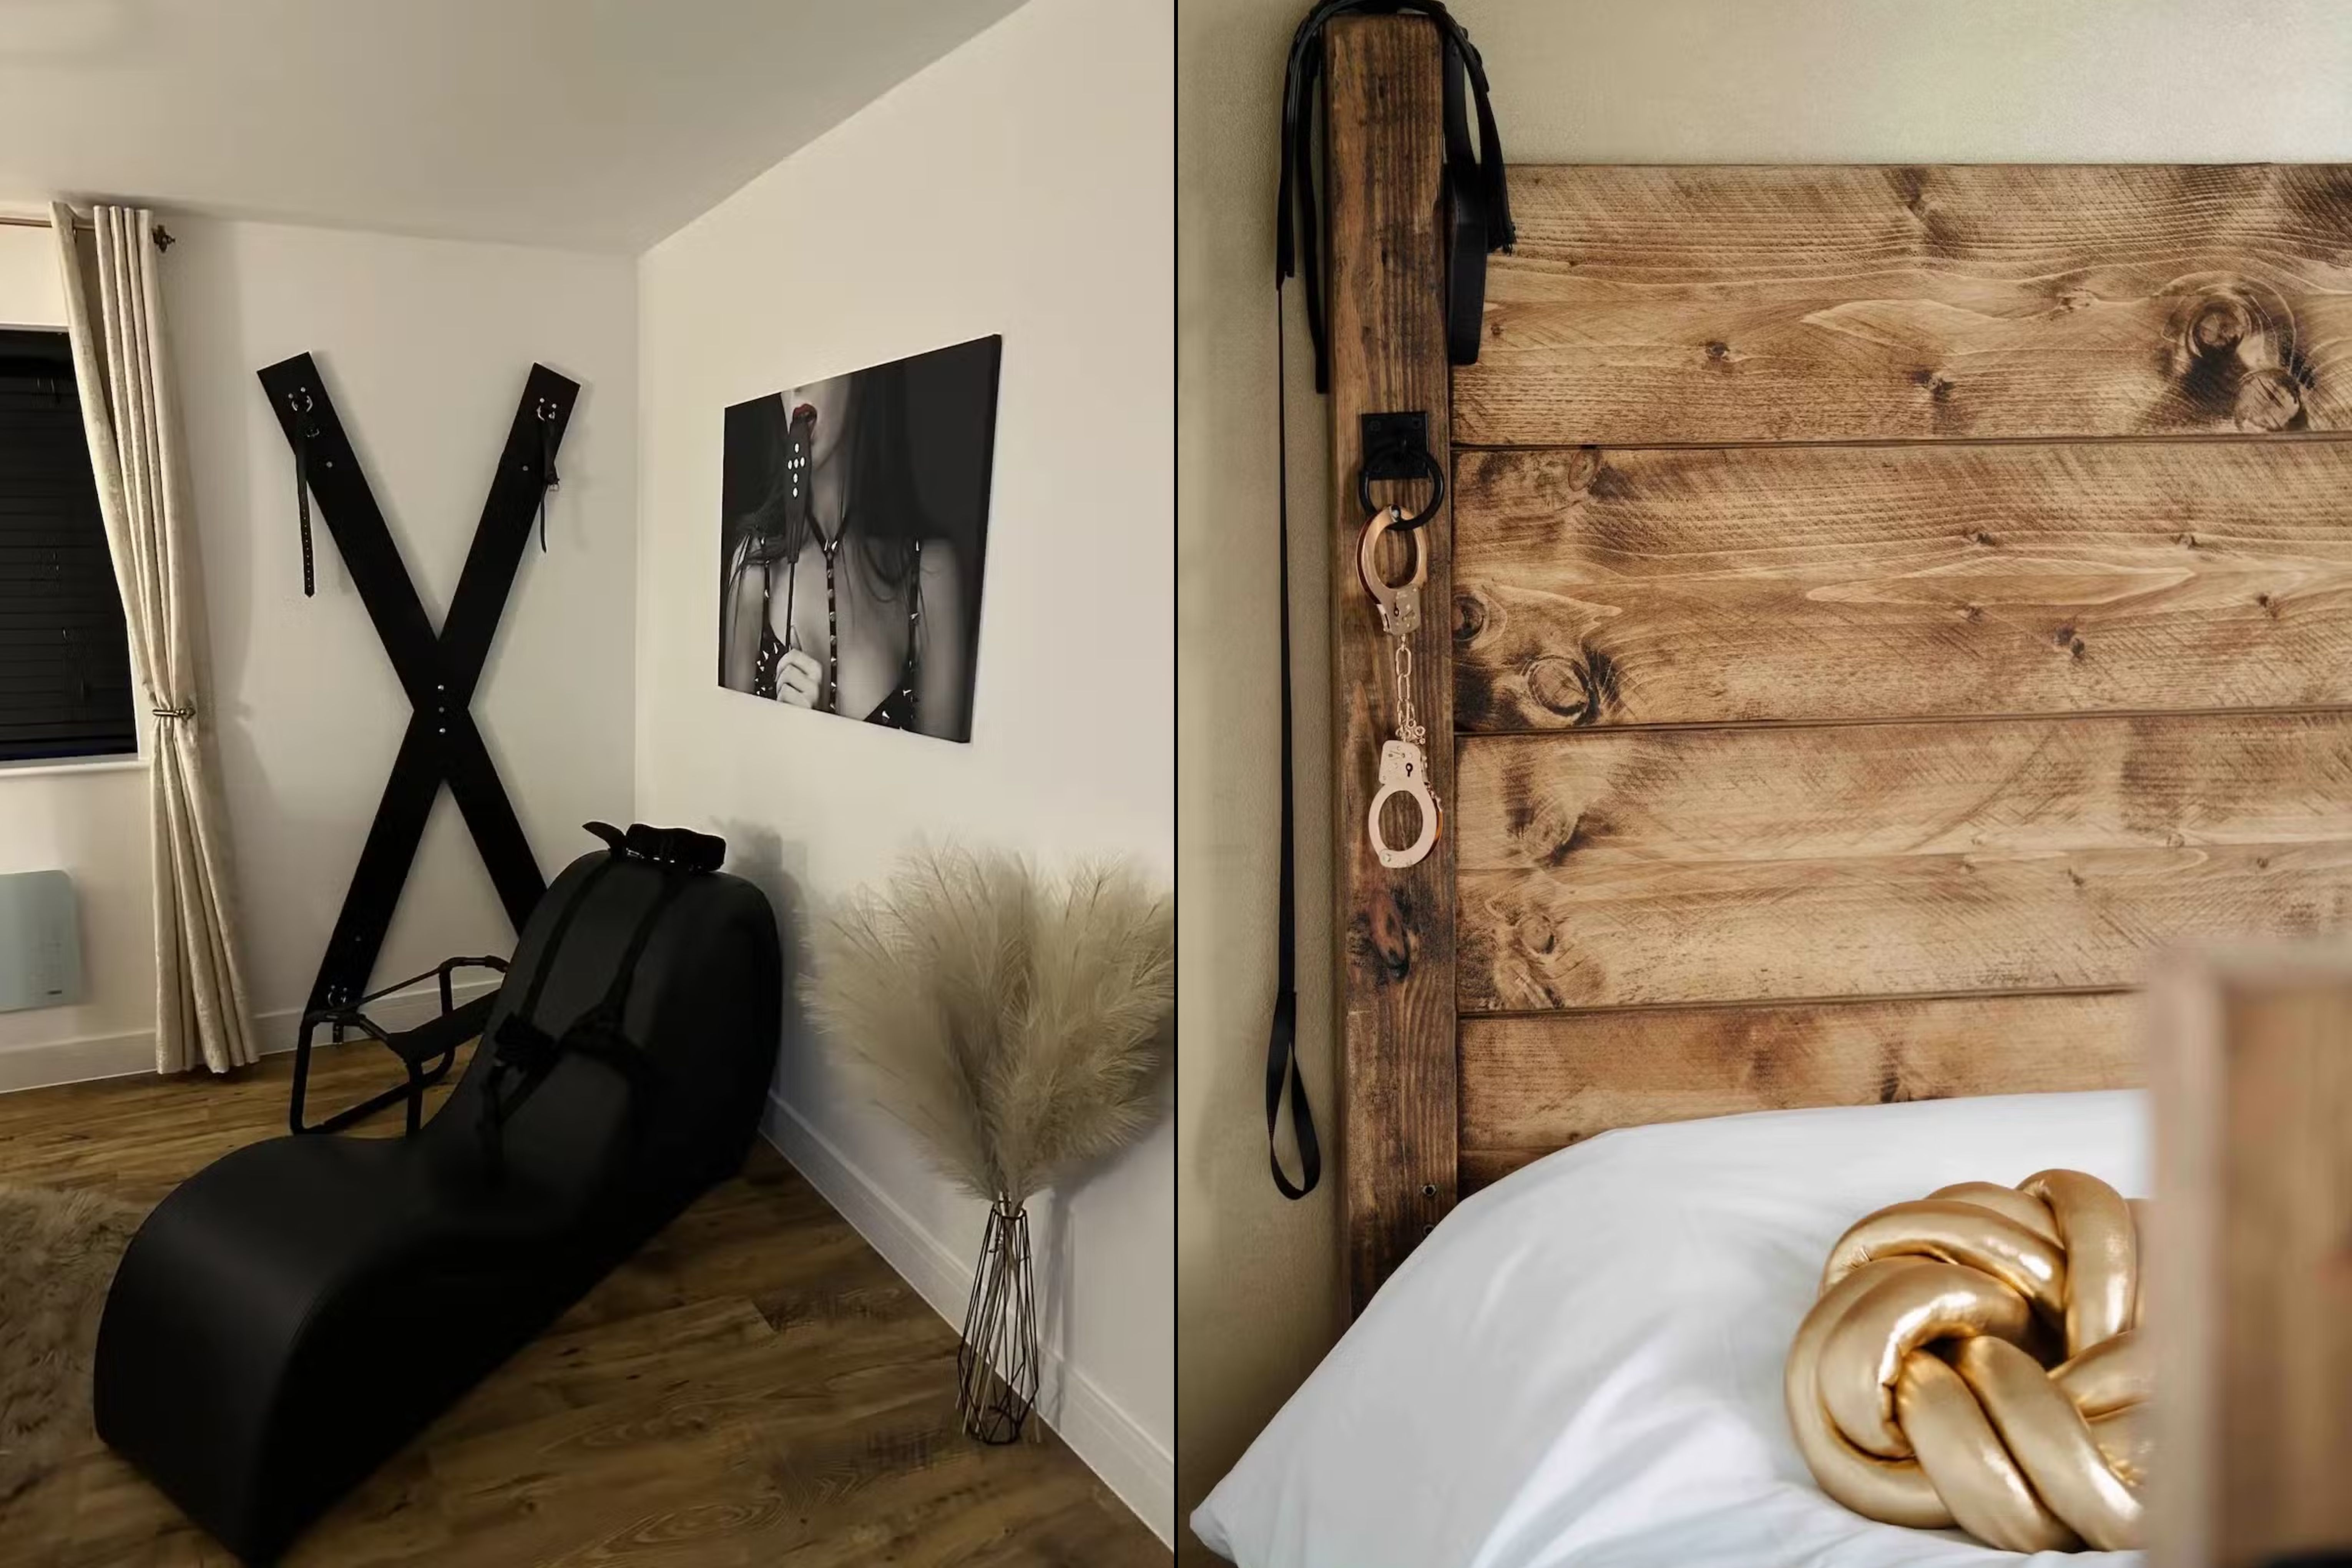 Elogiada no Airbnb com nota 4,95, a Casa Amor é a escolha ideal para casais que desejam uma noite quente e inesquecível Reprodução/Airbnb